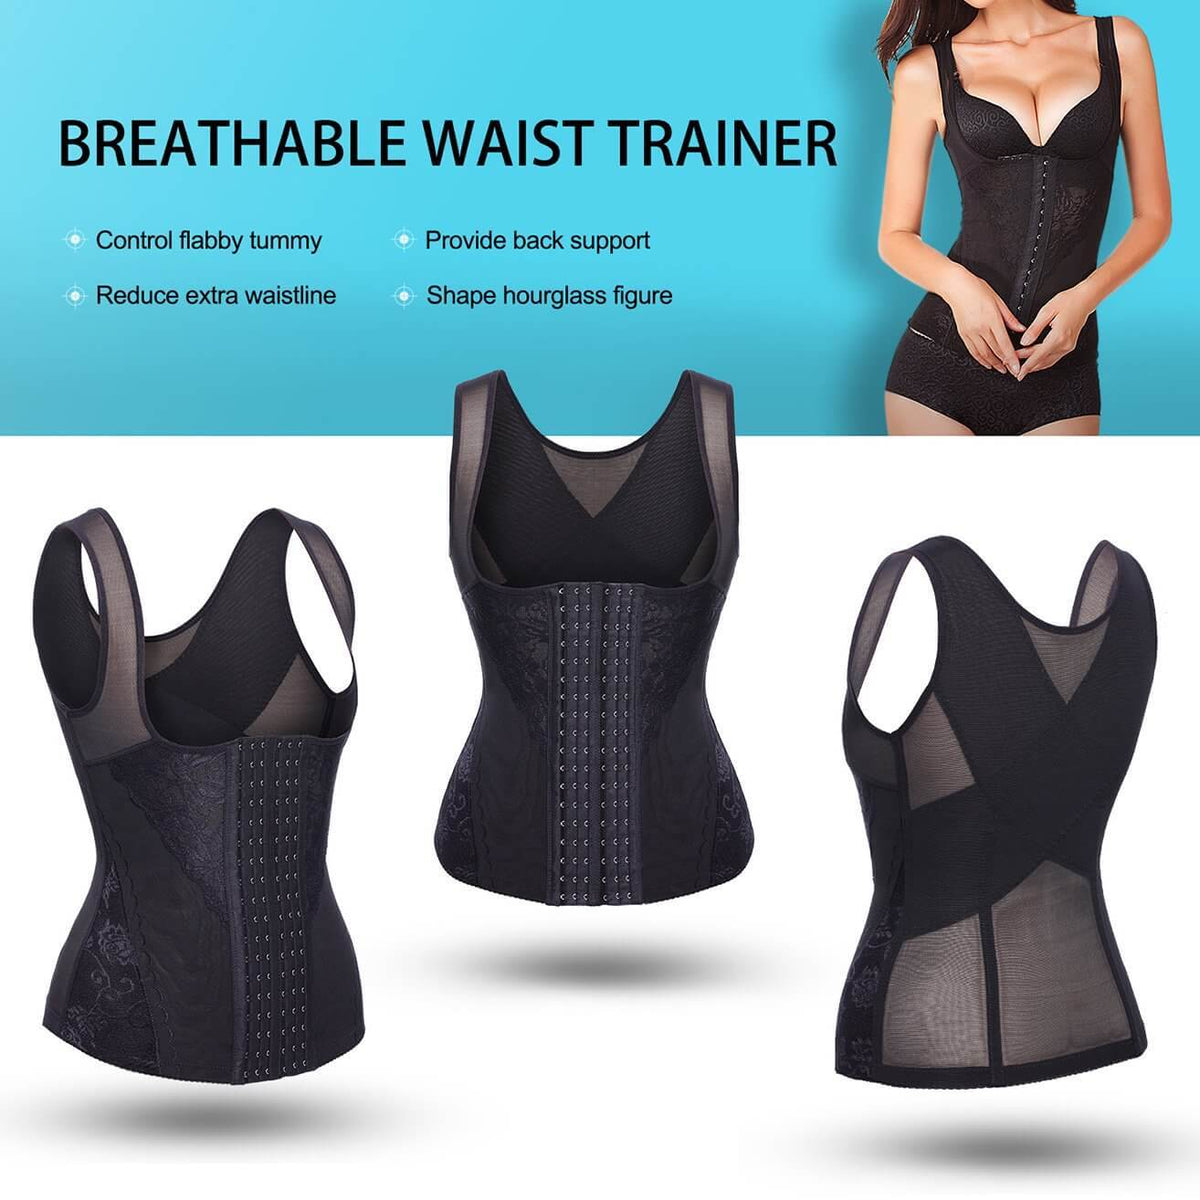 Women Waist Trainer Vest Breathable Shapewear Weight Loss Tank Top Black - NebilityWomen Waist Trainer Vest Breathable Shapewear Weight Loss Tank Top - Nebility